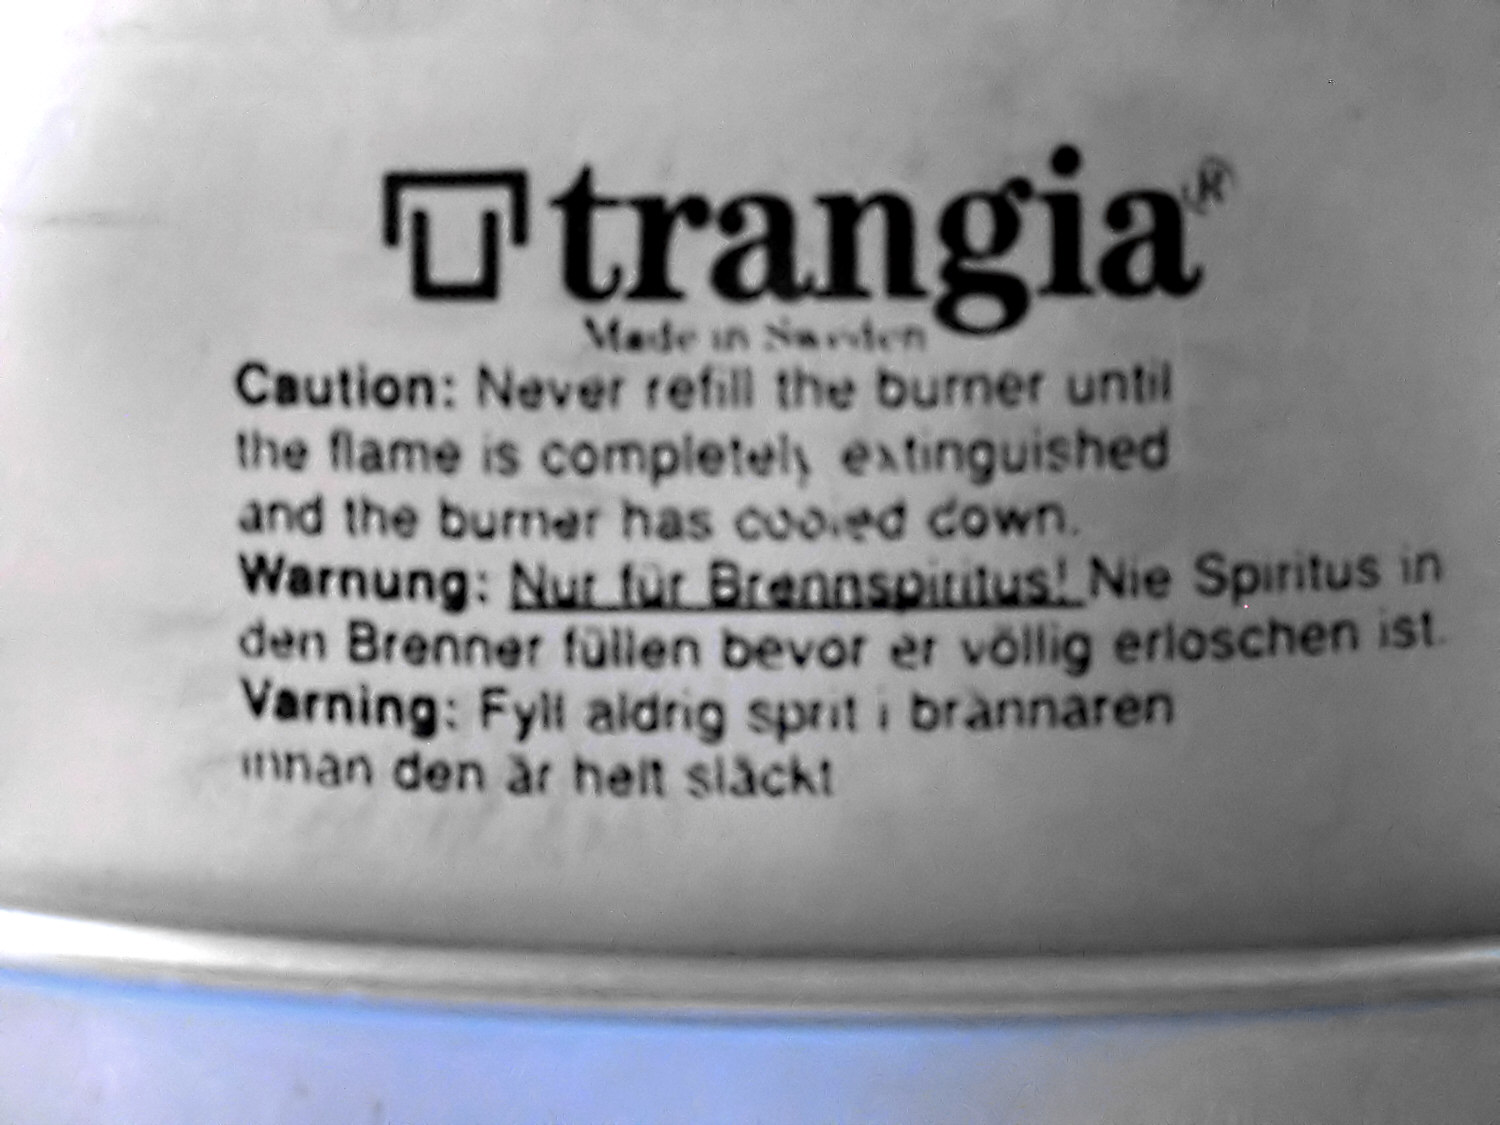 Trangia - Wikipedia